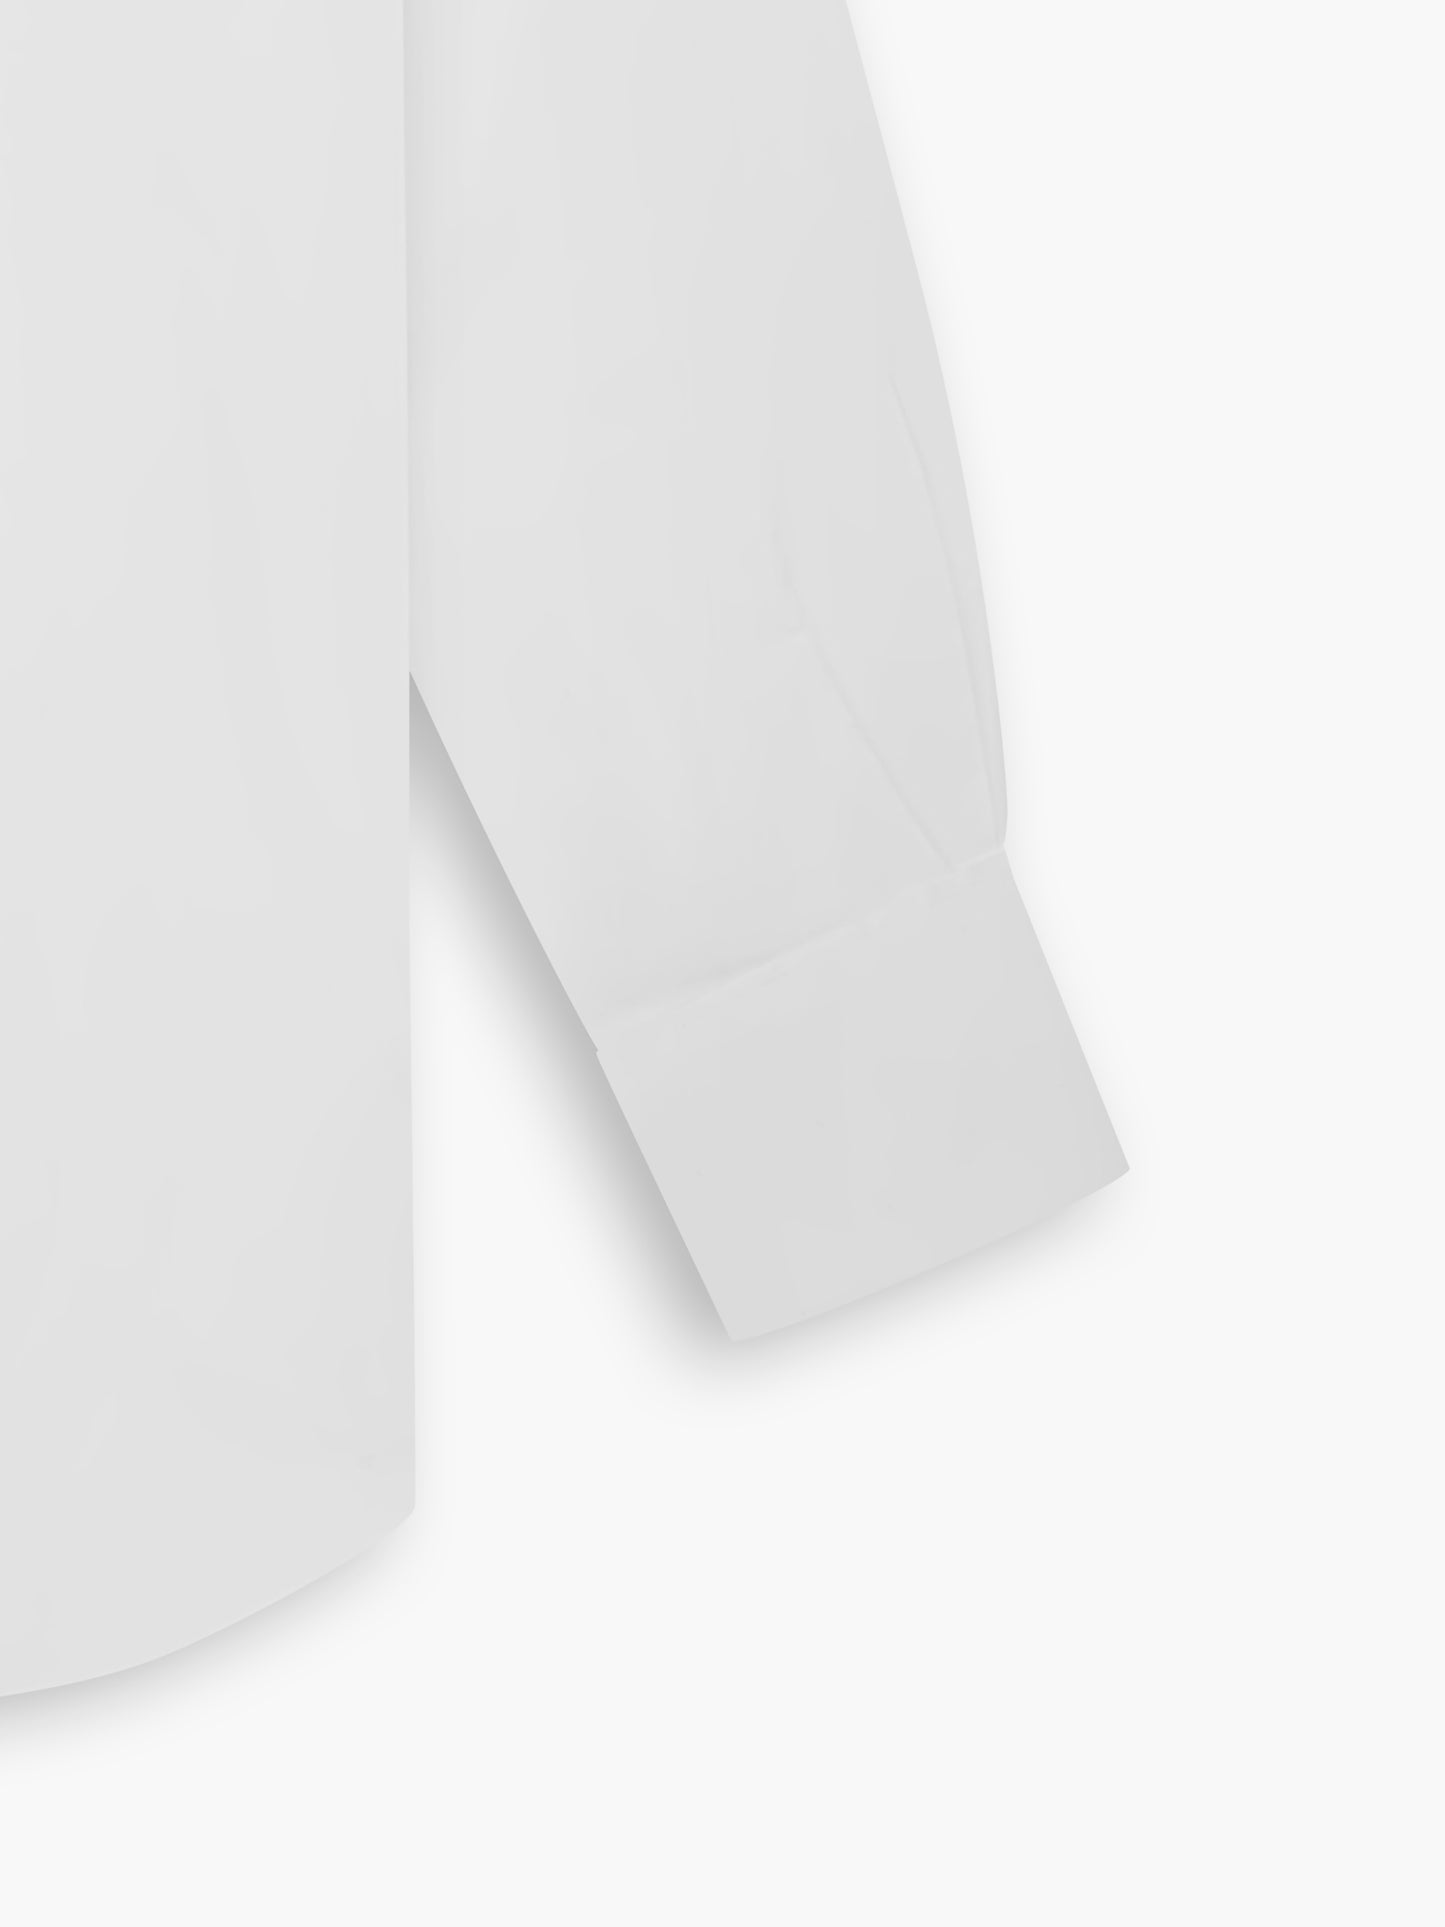 Non-Iron White Twill Slim Fit Double Cuff Classic Collar Shirt